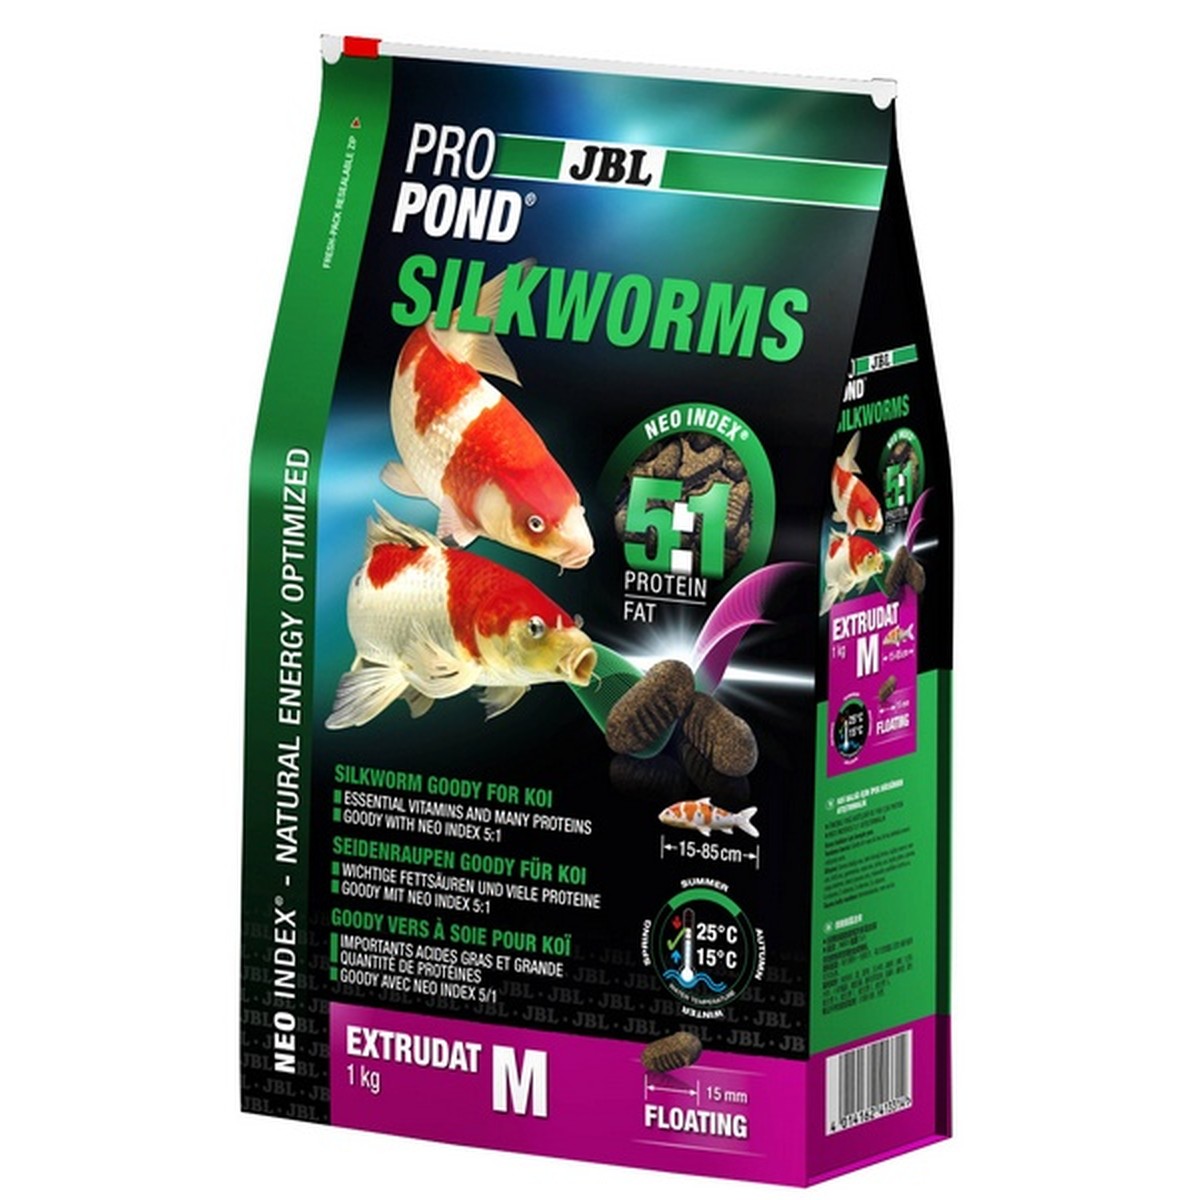   JBL ProPond Silkworms M, 1 kg  1kg